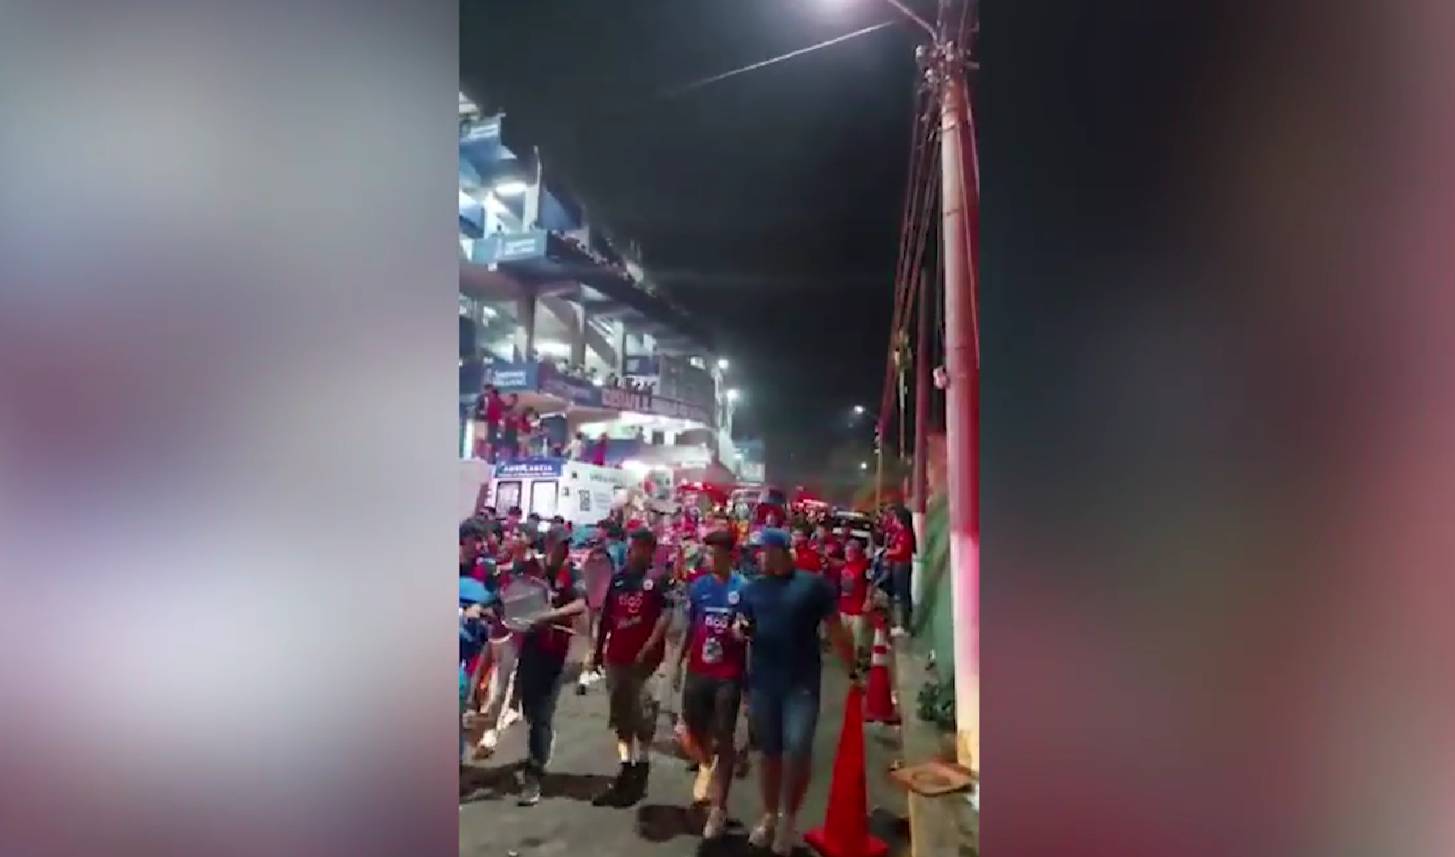 Давка на футбольном стадионе в Сальвадоре привела к гибели девяти человек